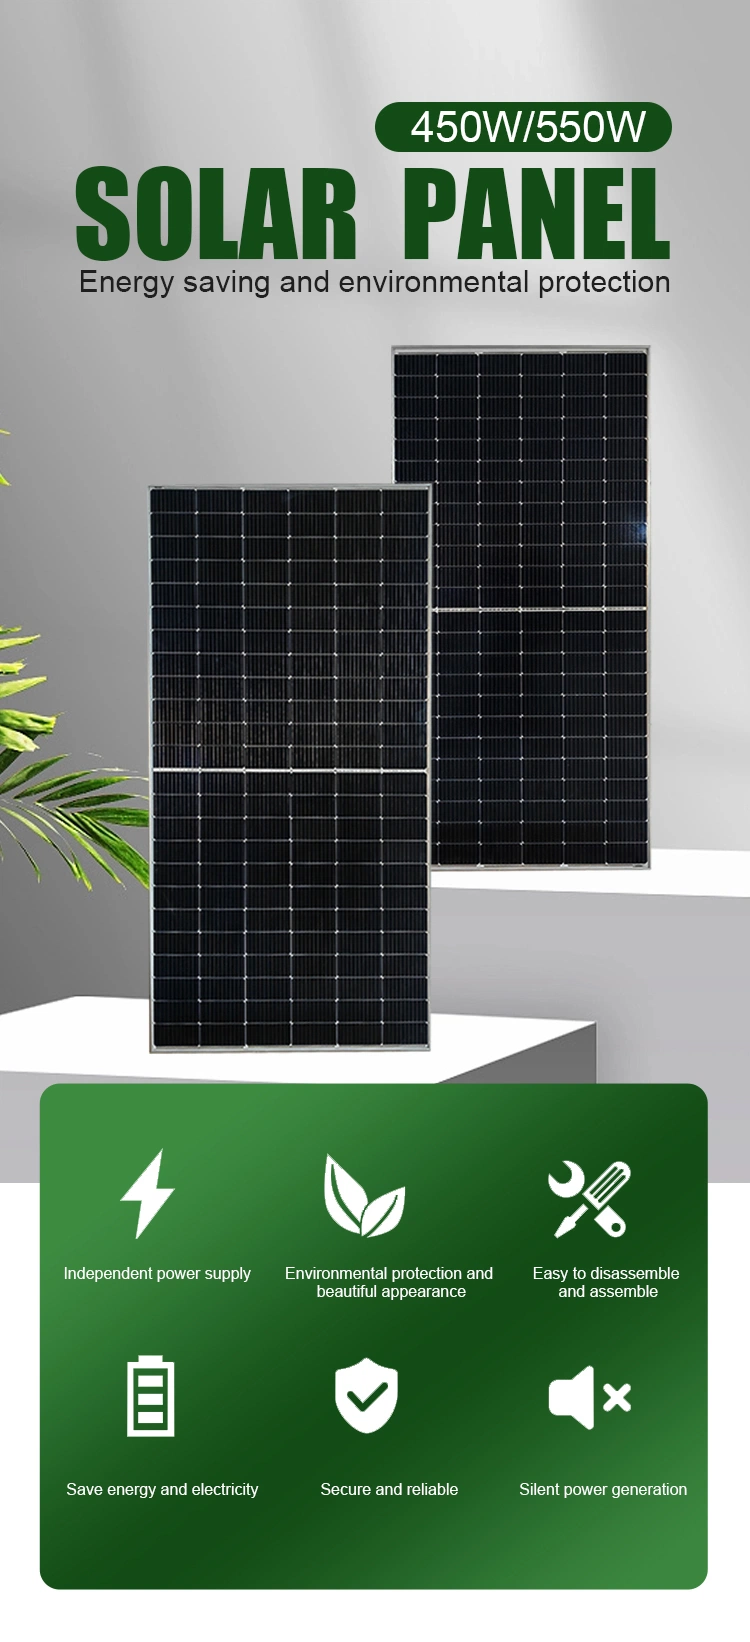 Industrial 450W Zhouyang Panel Solar Monocrystalline Roof PV Module 530W 420W New